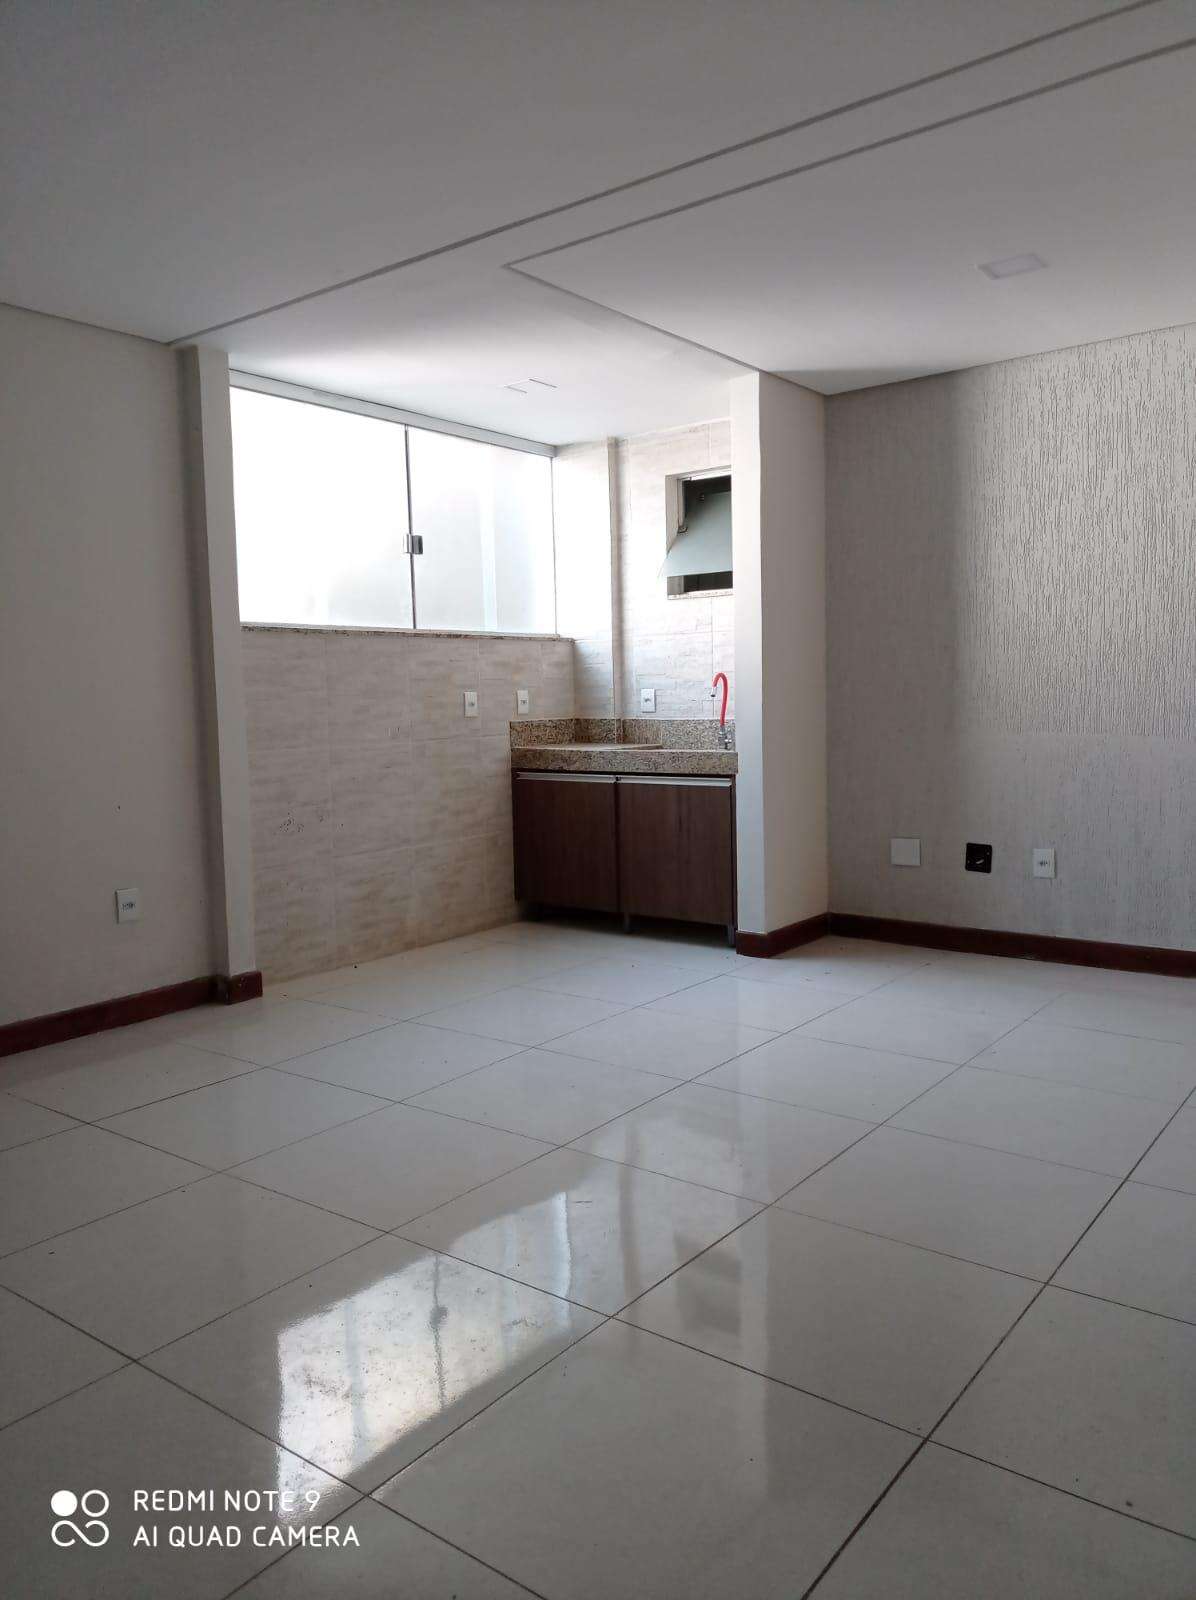 Apartamento 3 quartos para aluguel no Centro: 3e826c70-c-whatsapp-image-2022-05-12-at-15.35.54-2.jpeg